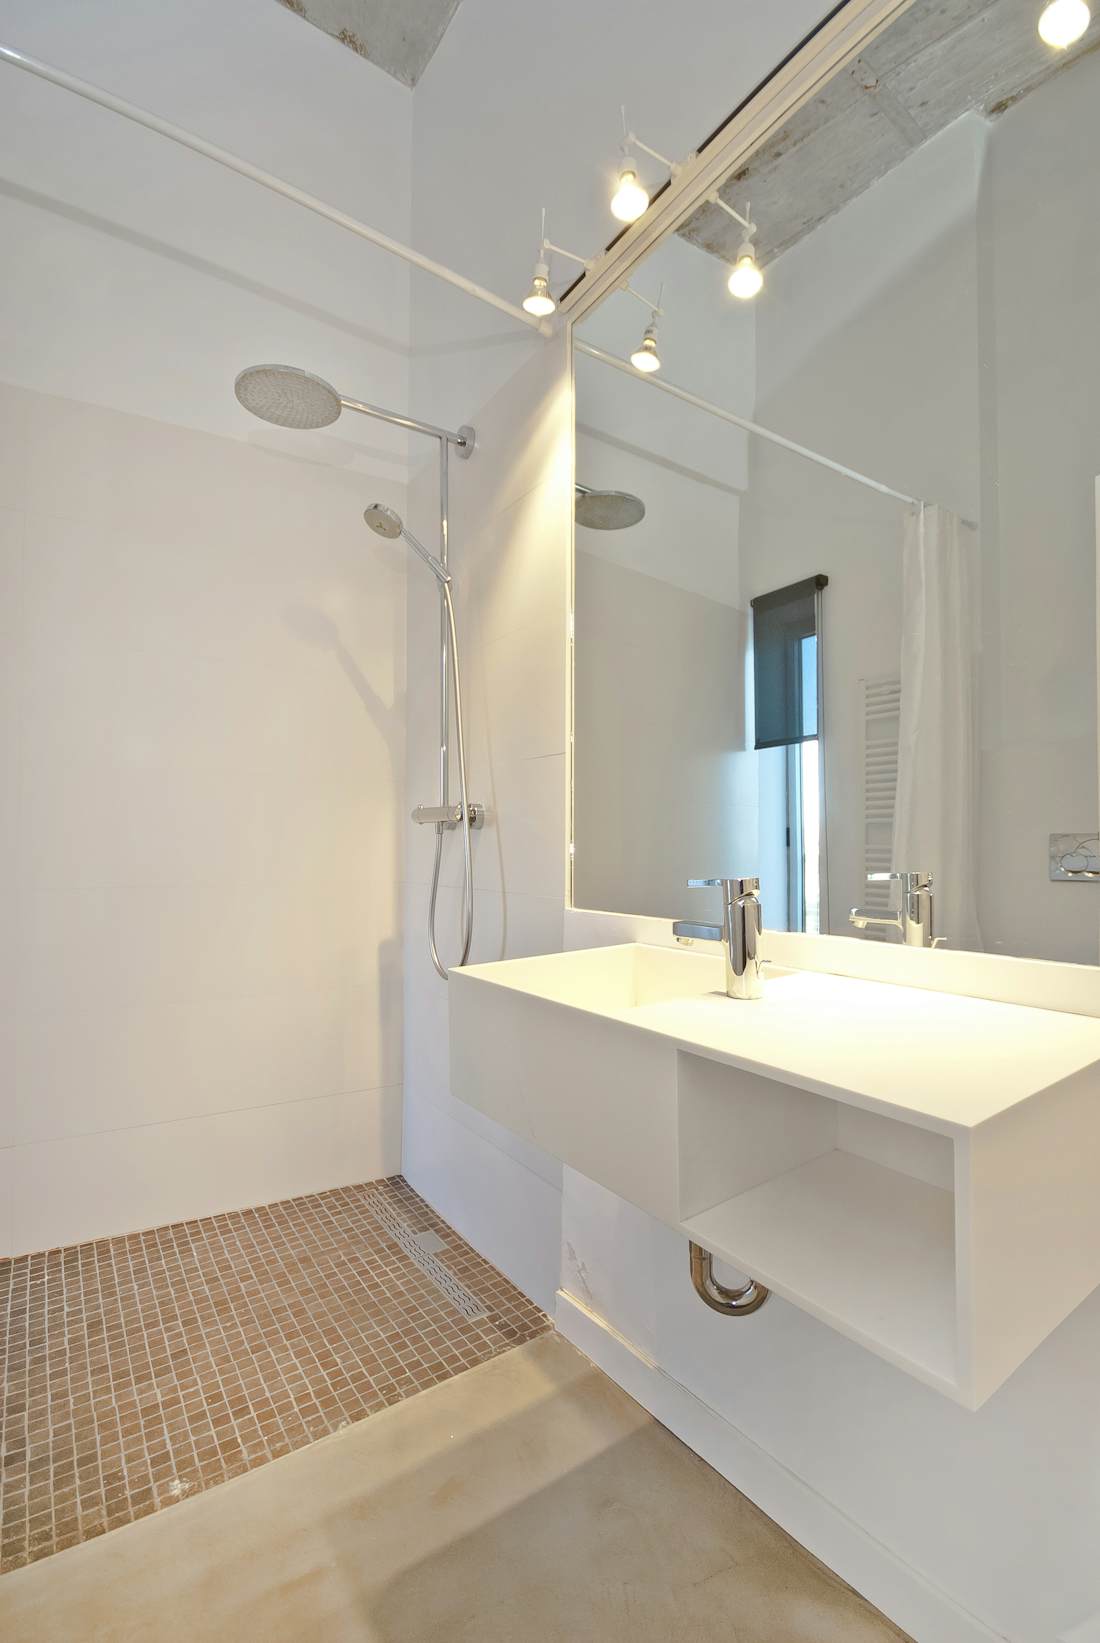 Mallorca accommodation - Villa H20 - Modern bathroom with amenities sea view villa H2O in Mallorca